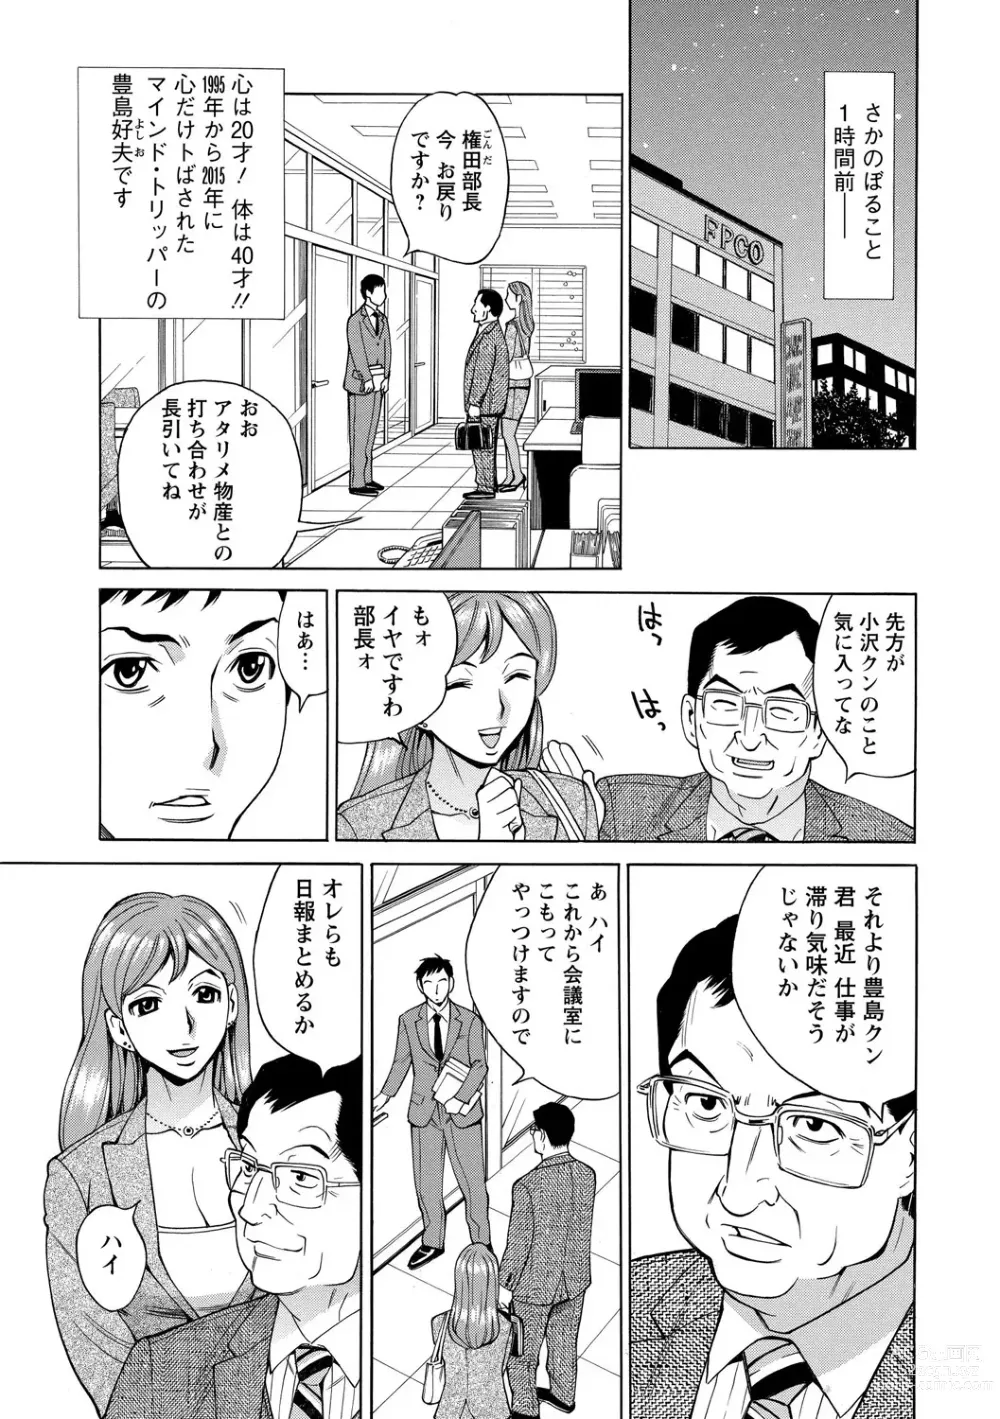 Page 27 of manga Inniku Jukujo no Namashibori.